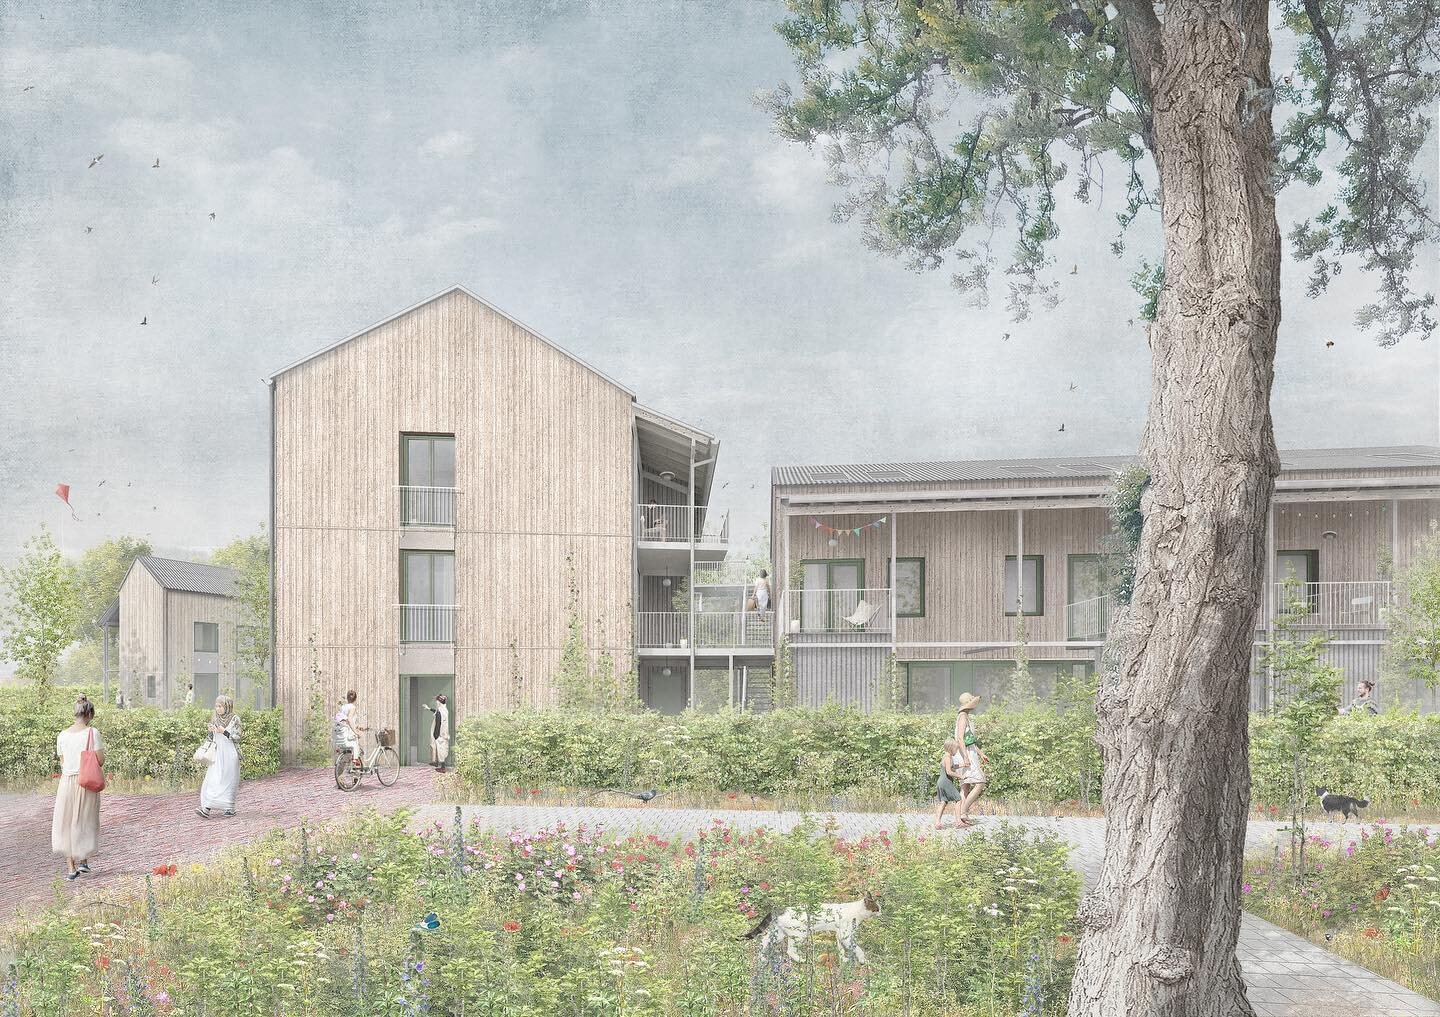 #communalhousing project Meer&amp;deel. 40 hybrid timber houses will be built on the former Philips factory site Vredeoord in Eindhoven (NL). 

#meer&amp;deel draait om de kracht van delen. De woningen staan in een gedeeld landschap, grondgebonden en